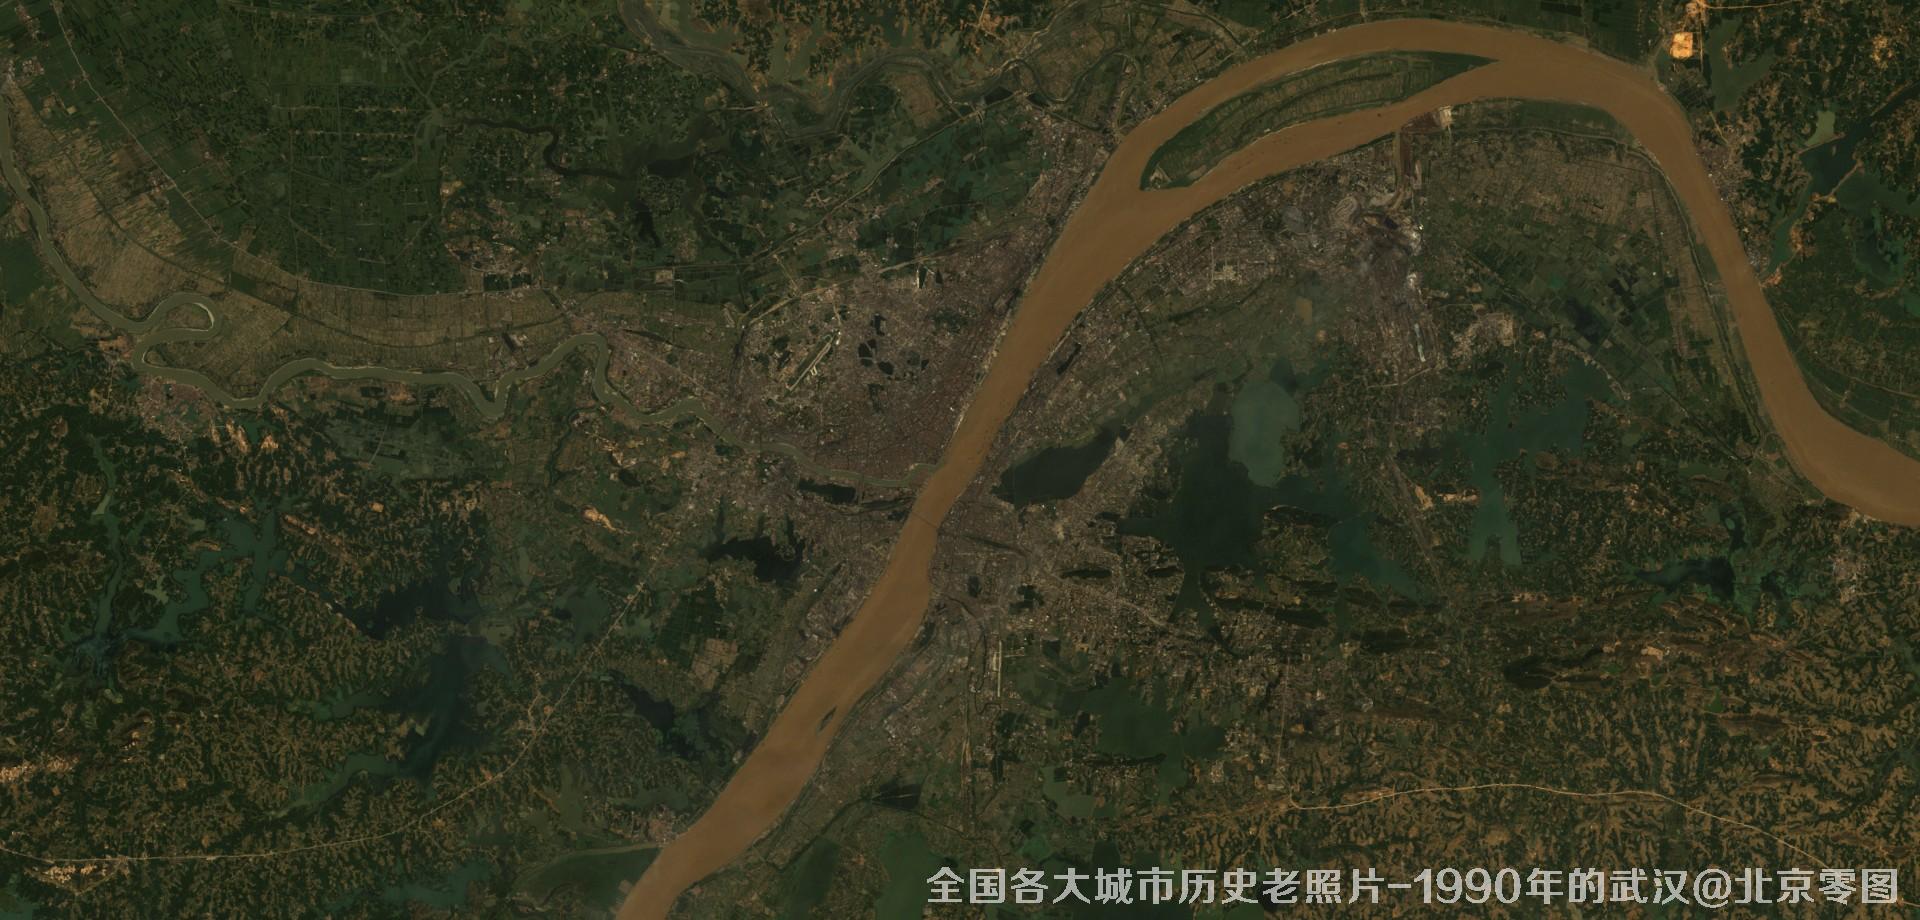 美国Landsat卫星拍摄的1990年的湖北省武汉市历史卫星影像图